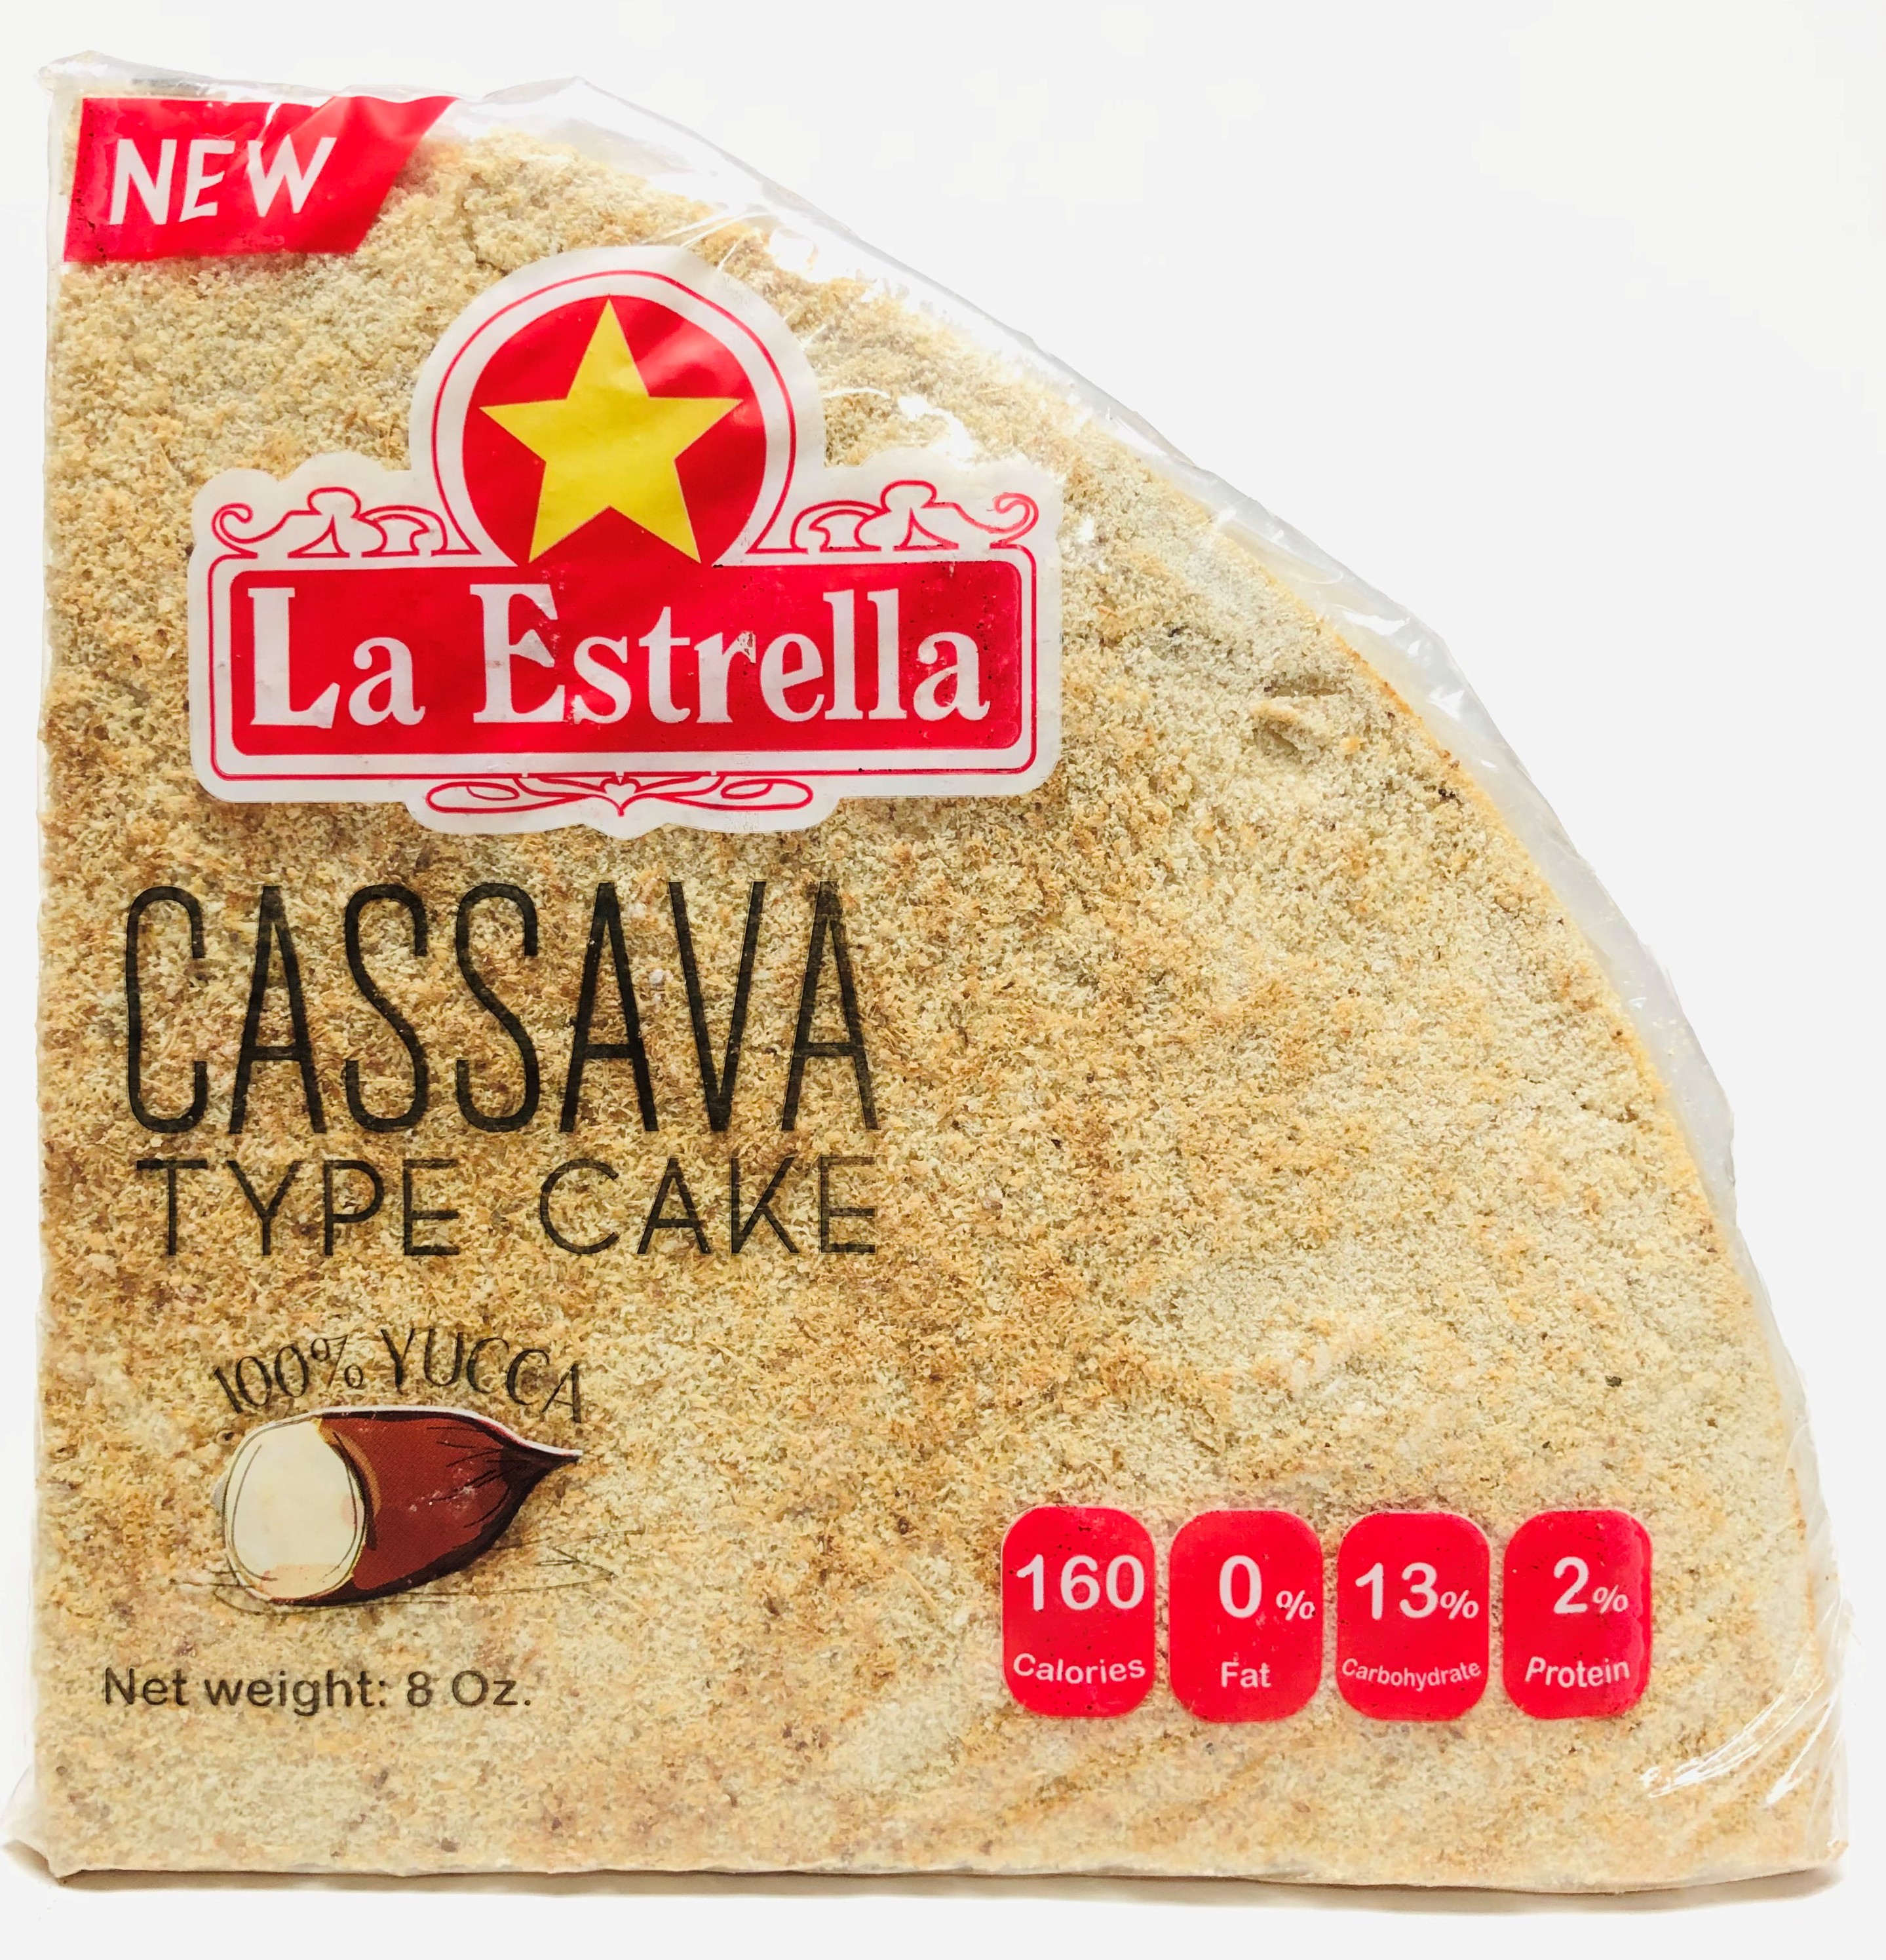 La Estrella Cassava Bread  Type Cake, Casabe 100% Yuca, 8 oz